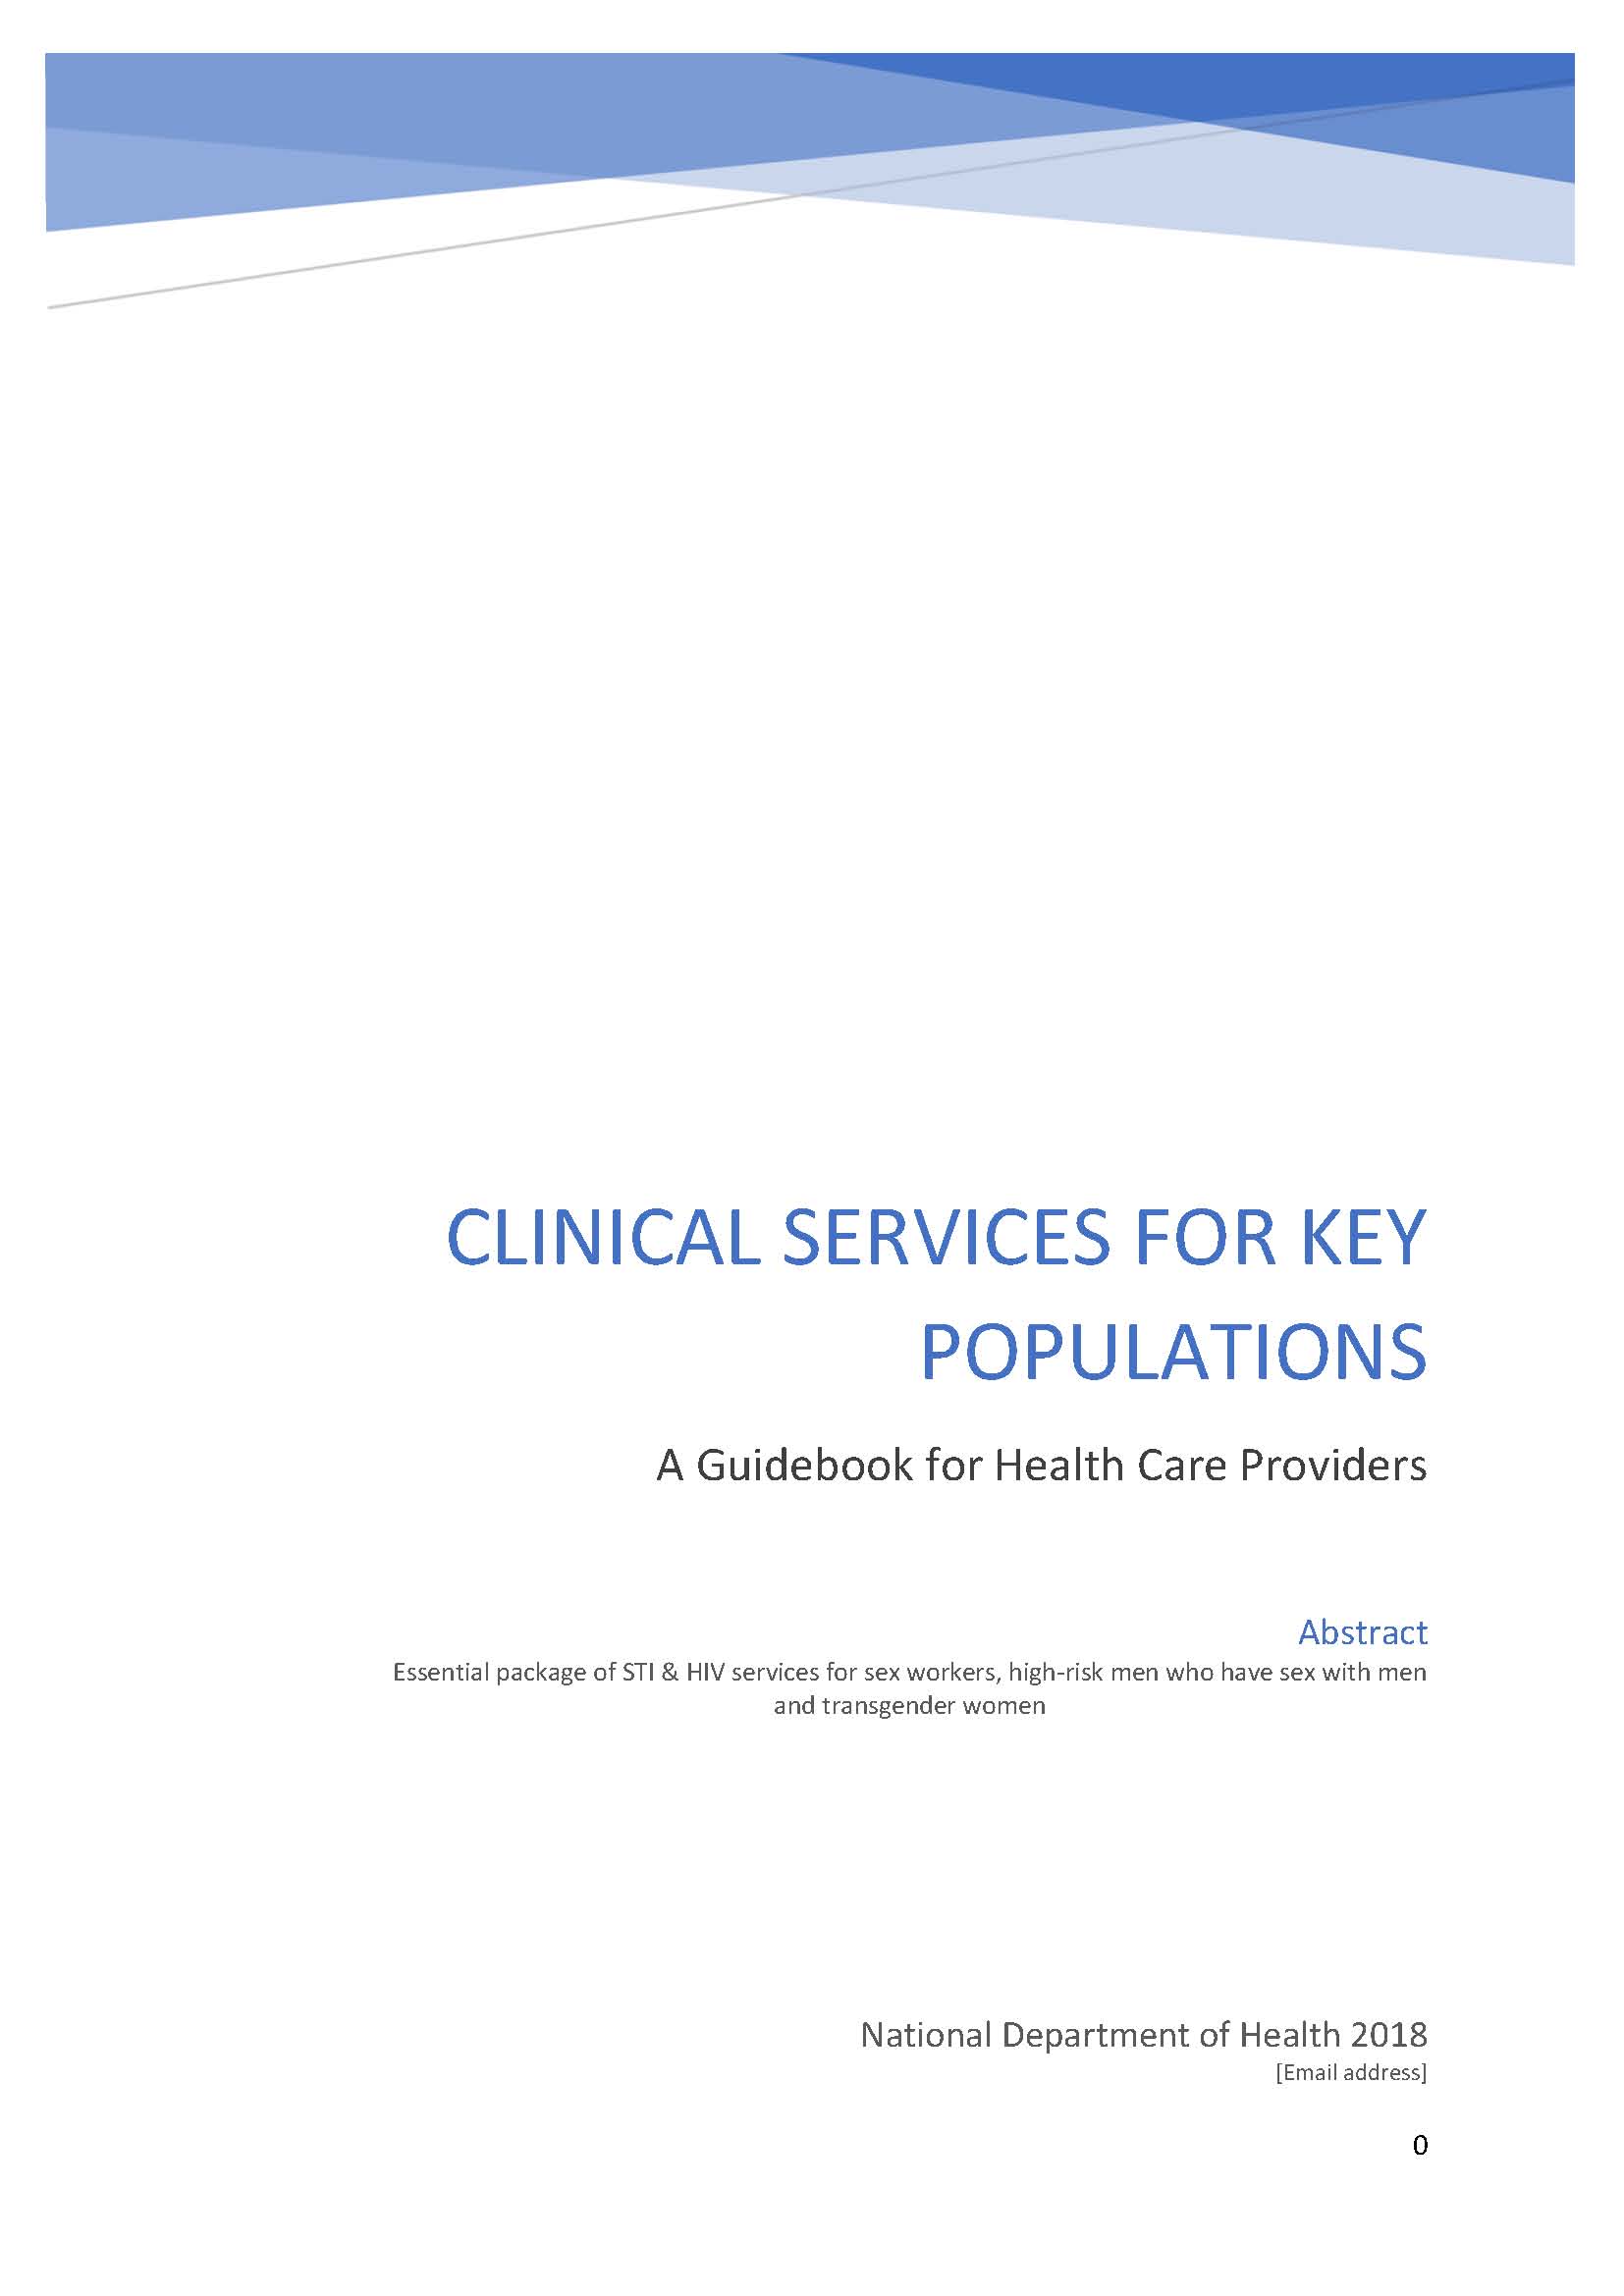 Servicios clínicos para poblaciones clave: Una guía para proveedores de atención sanitaria